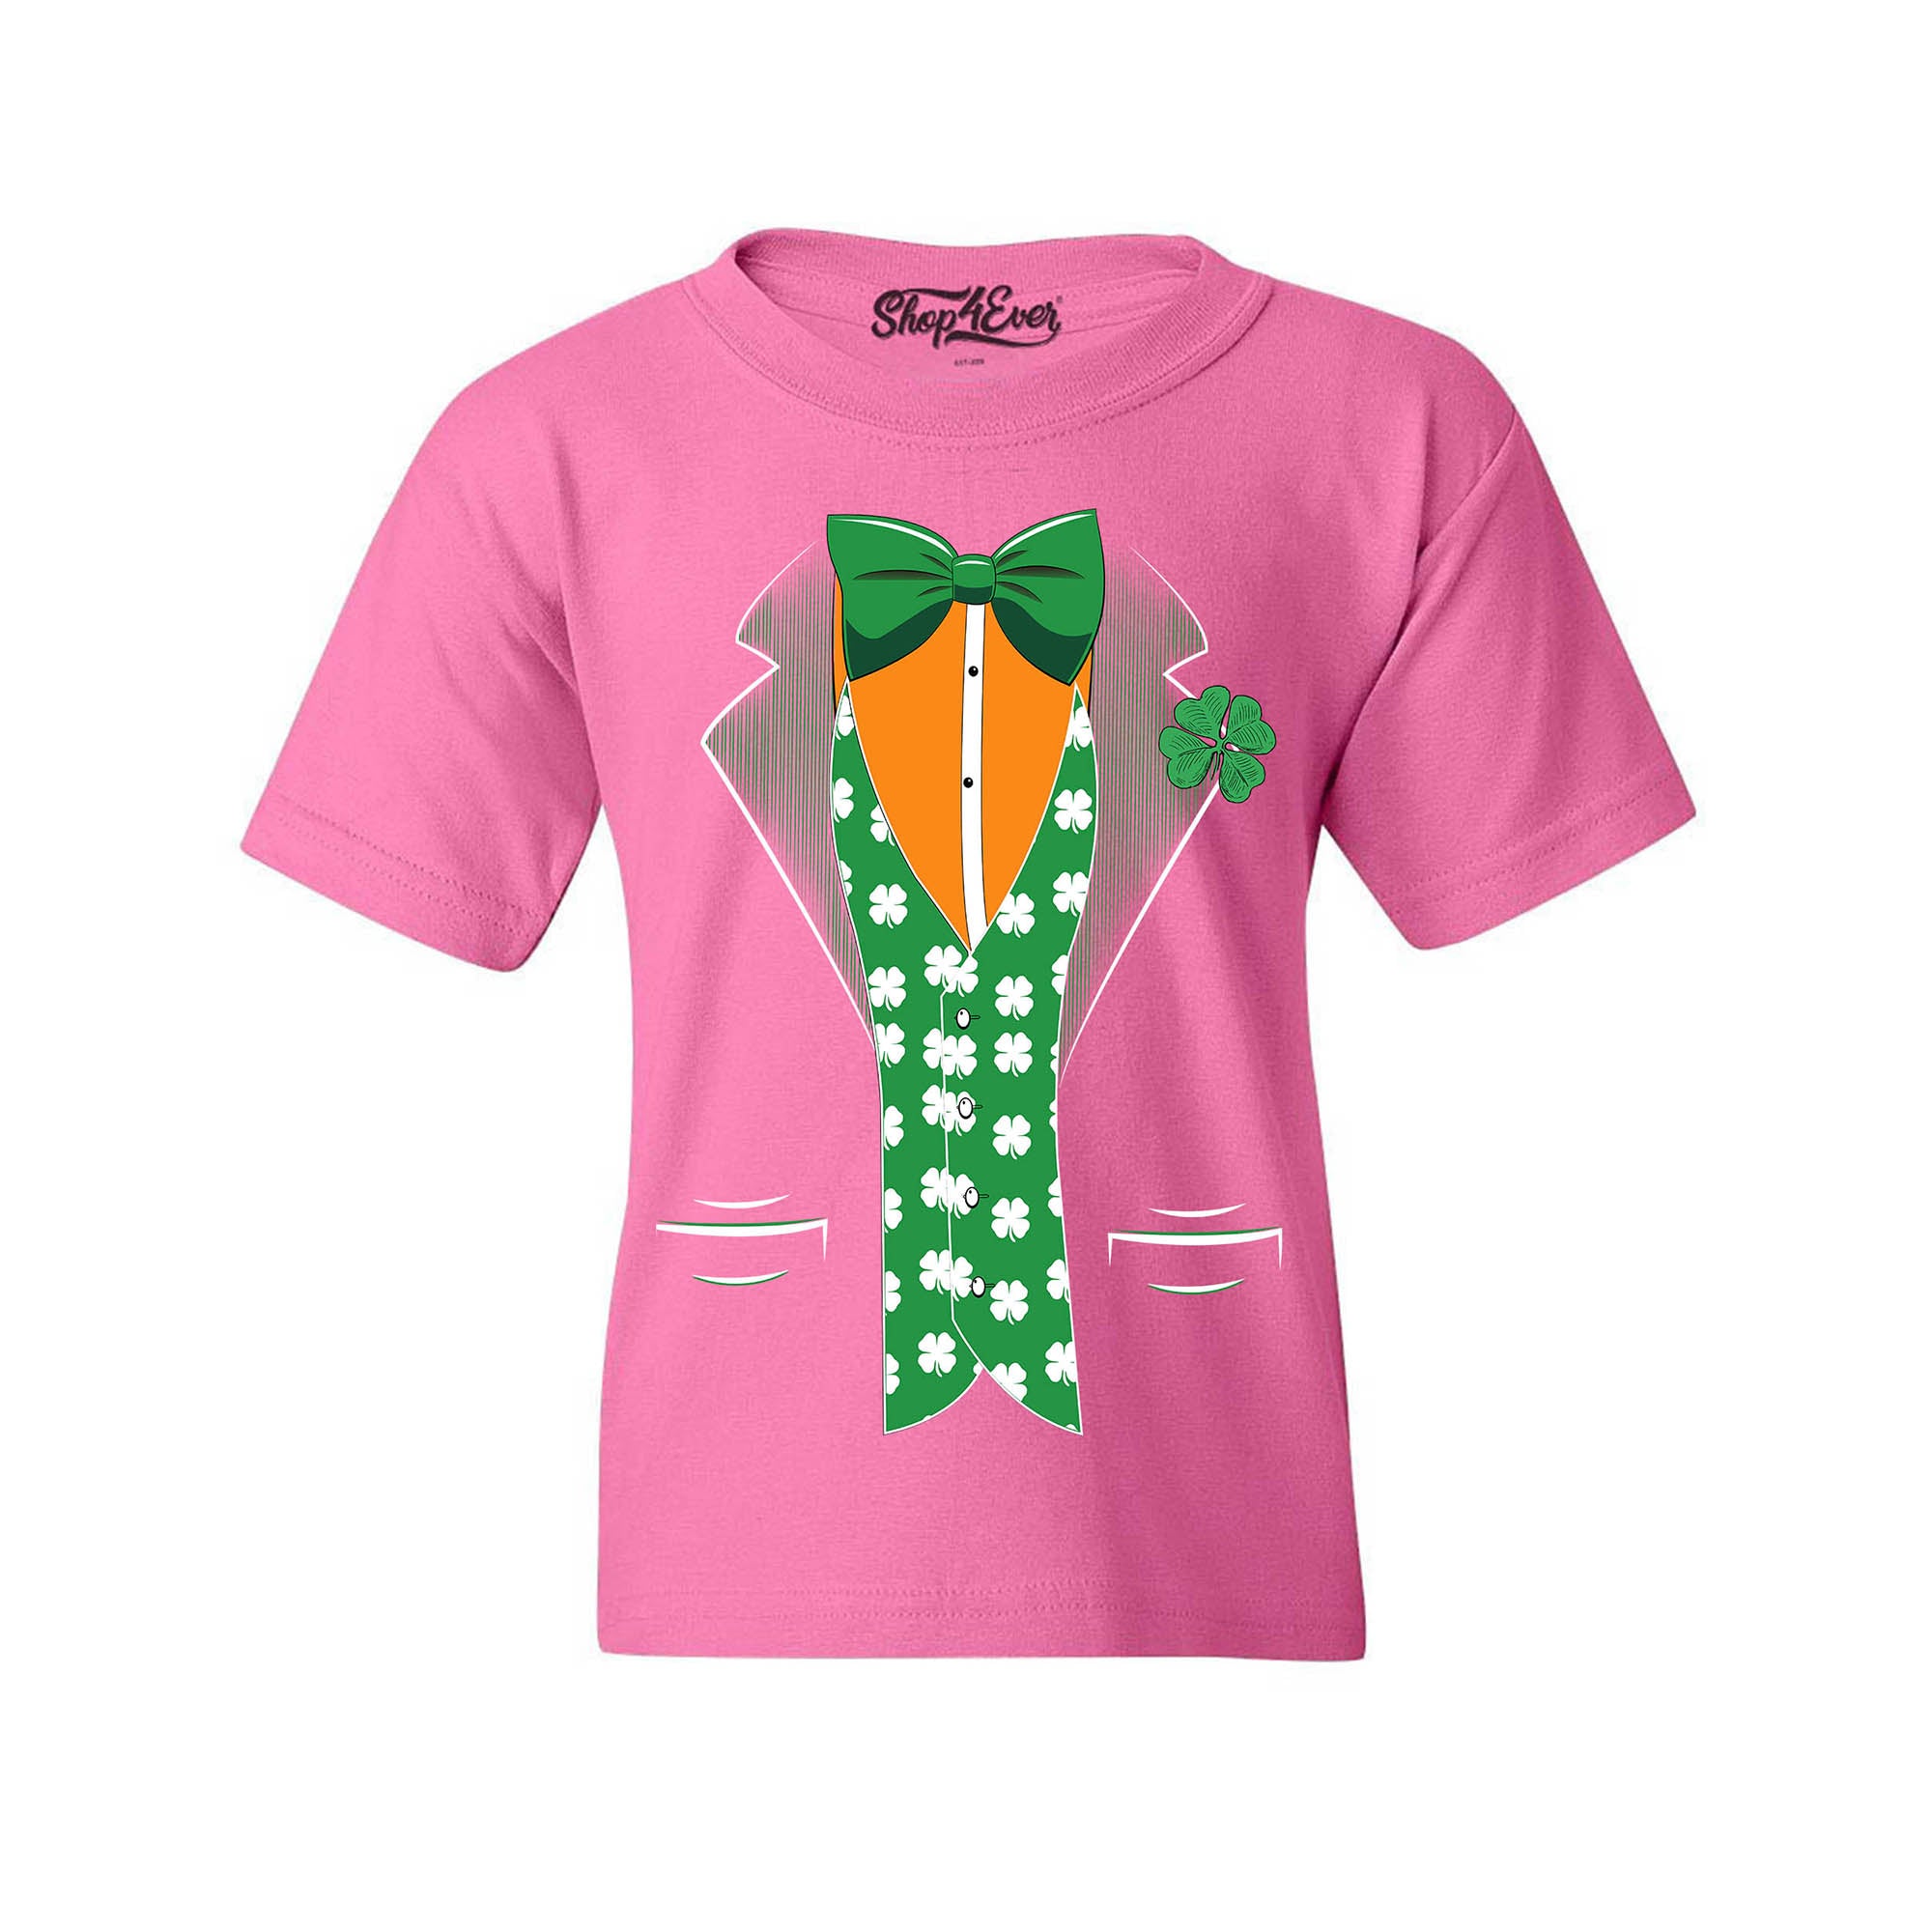 St. Patrick's Day Irish Tuxedo Leprechaun Costume Child's T-Shirt Kids Tee